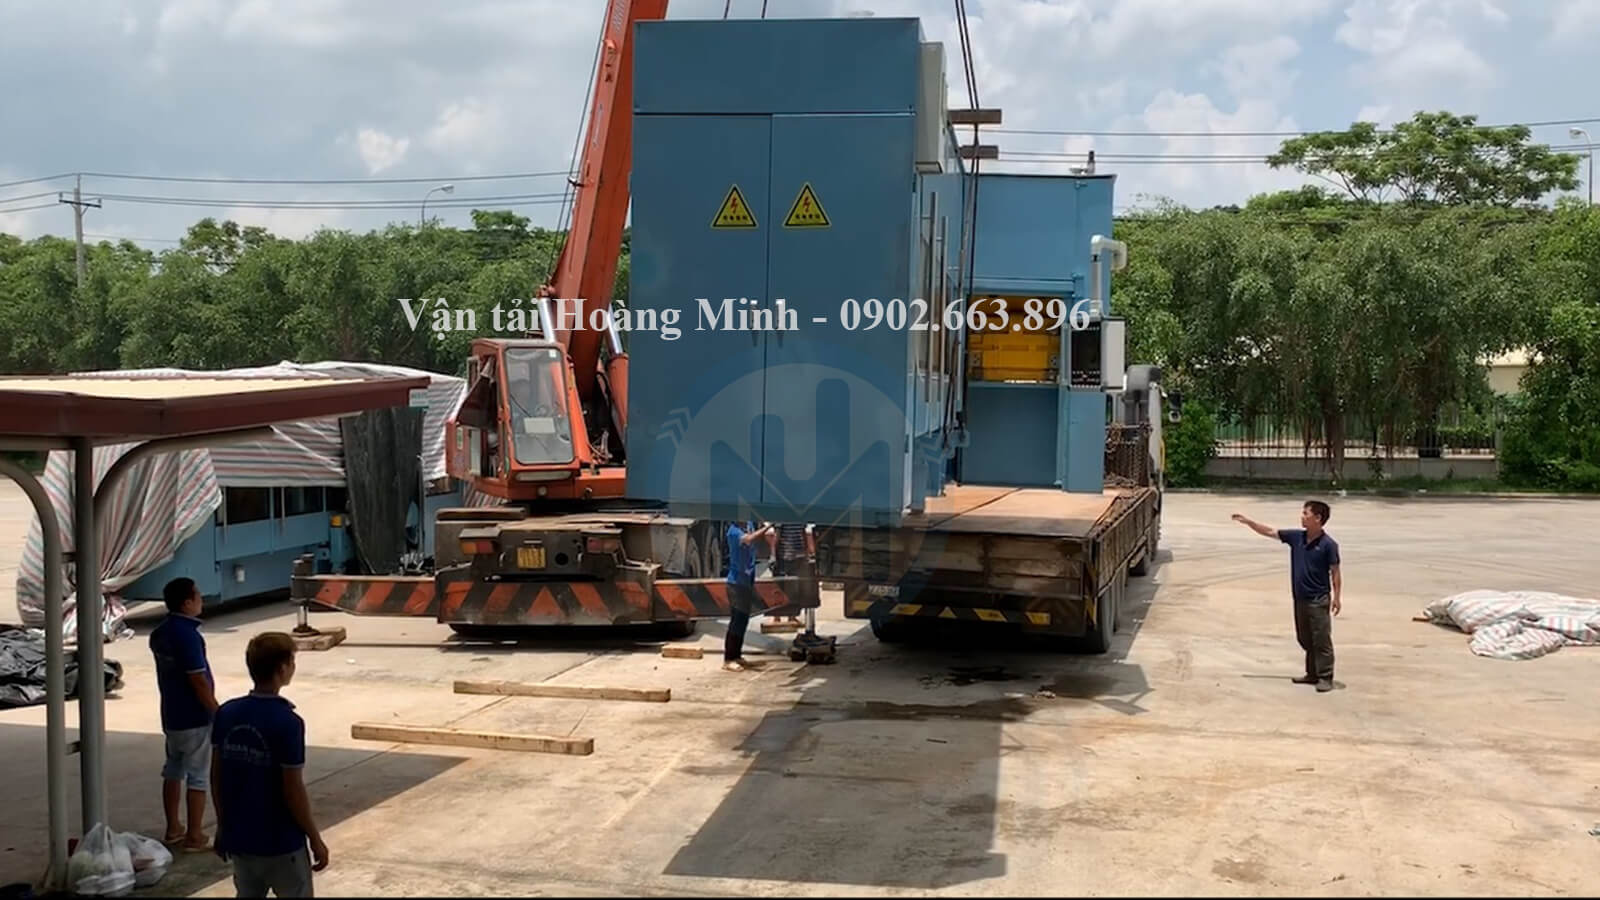 Hình ảnh vận chuyển nhà xưởng bằng xe cẩu Kato chuyên dụng cho khách tại Đồng Nai.jpg